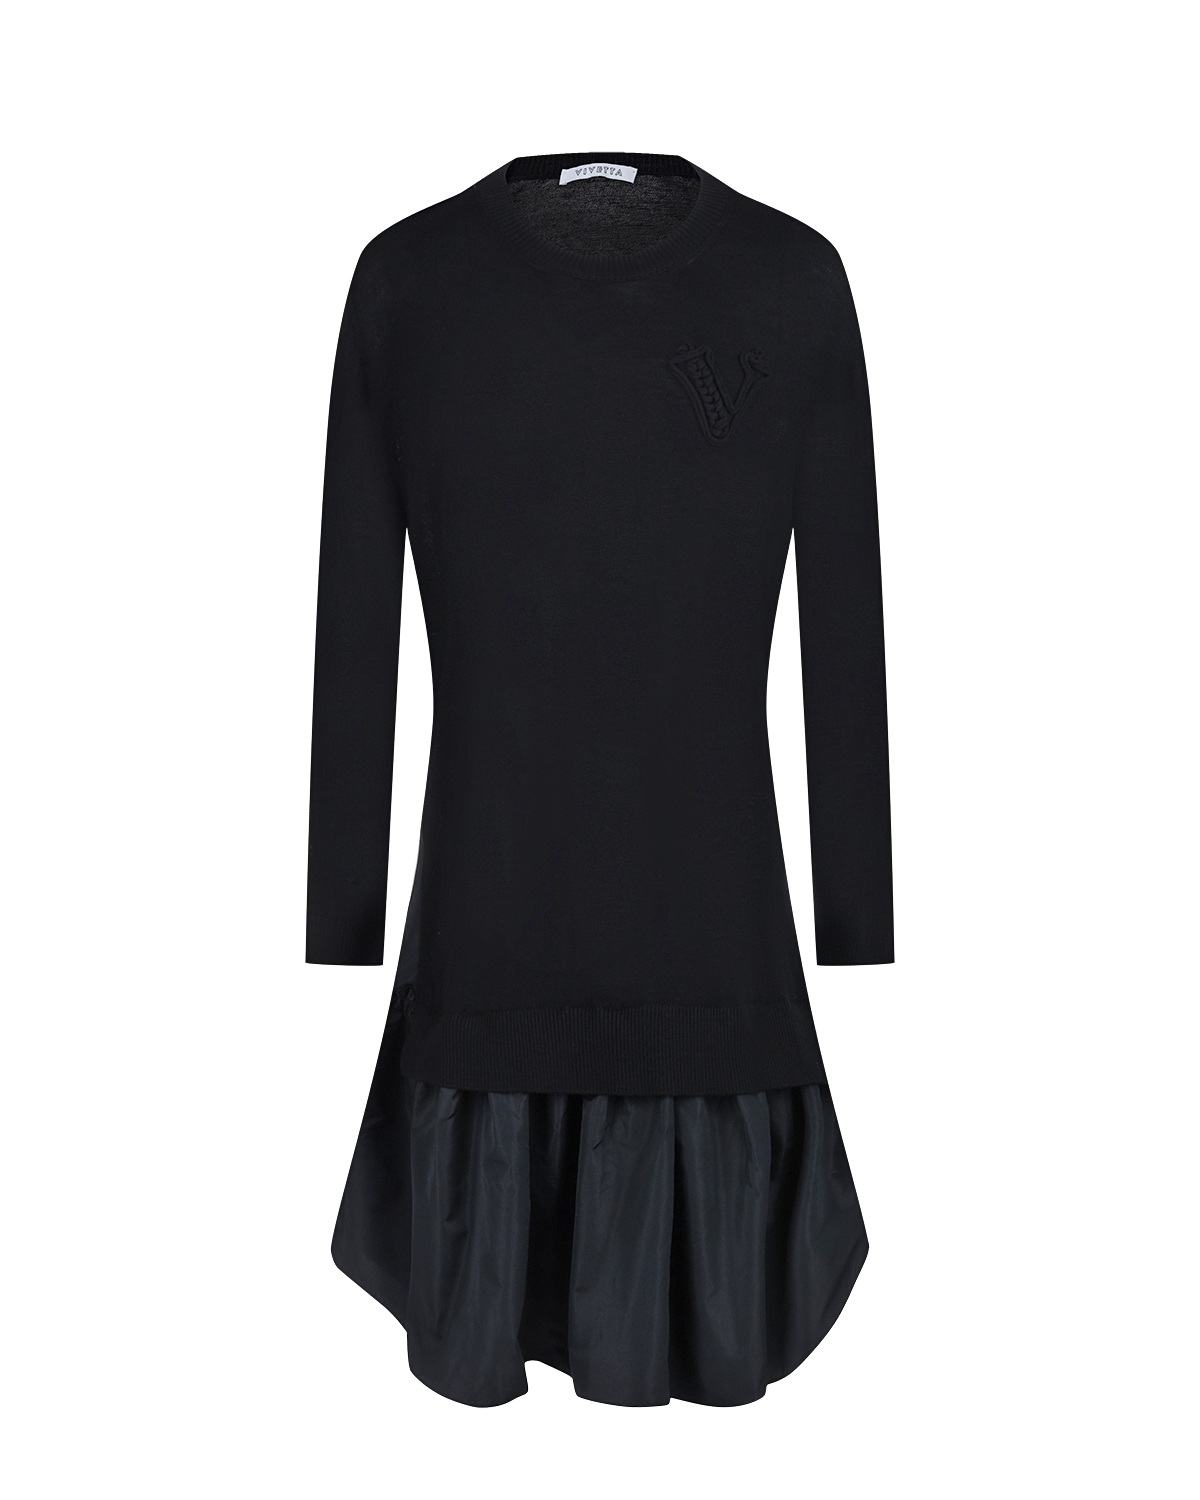 Трикотажное платье черного цвета Vivetta, размер 42 - фото 1